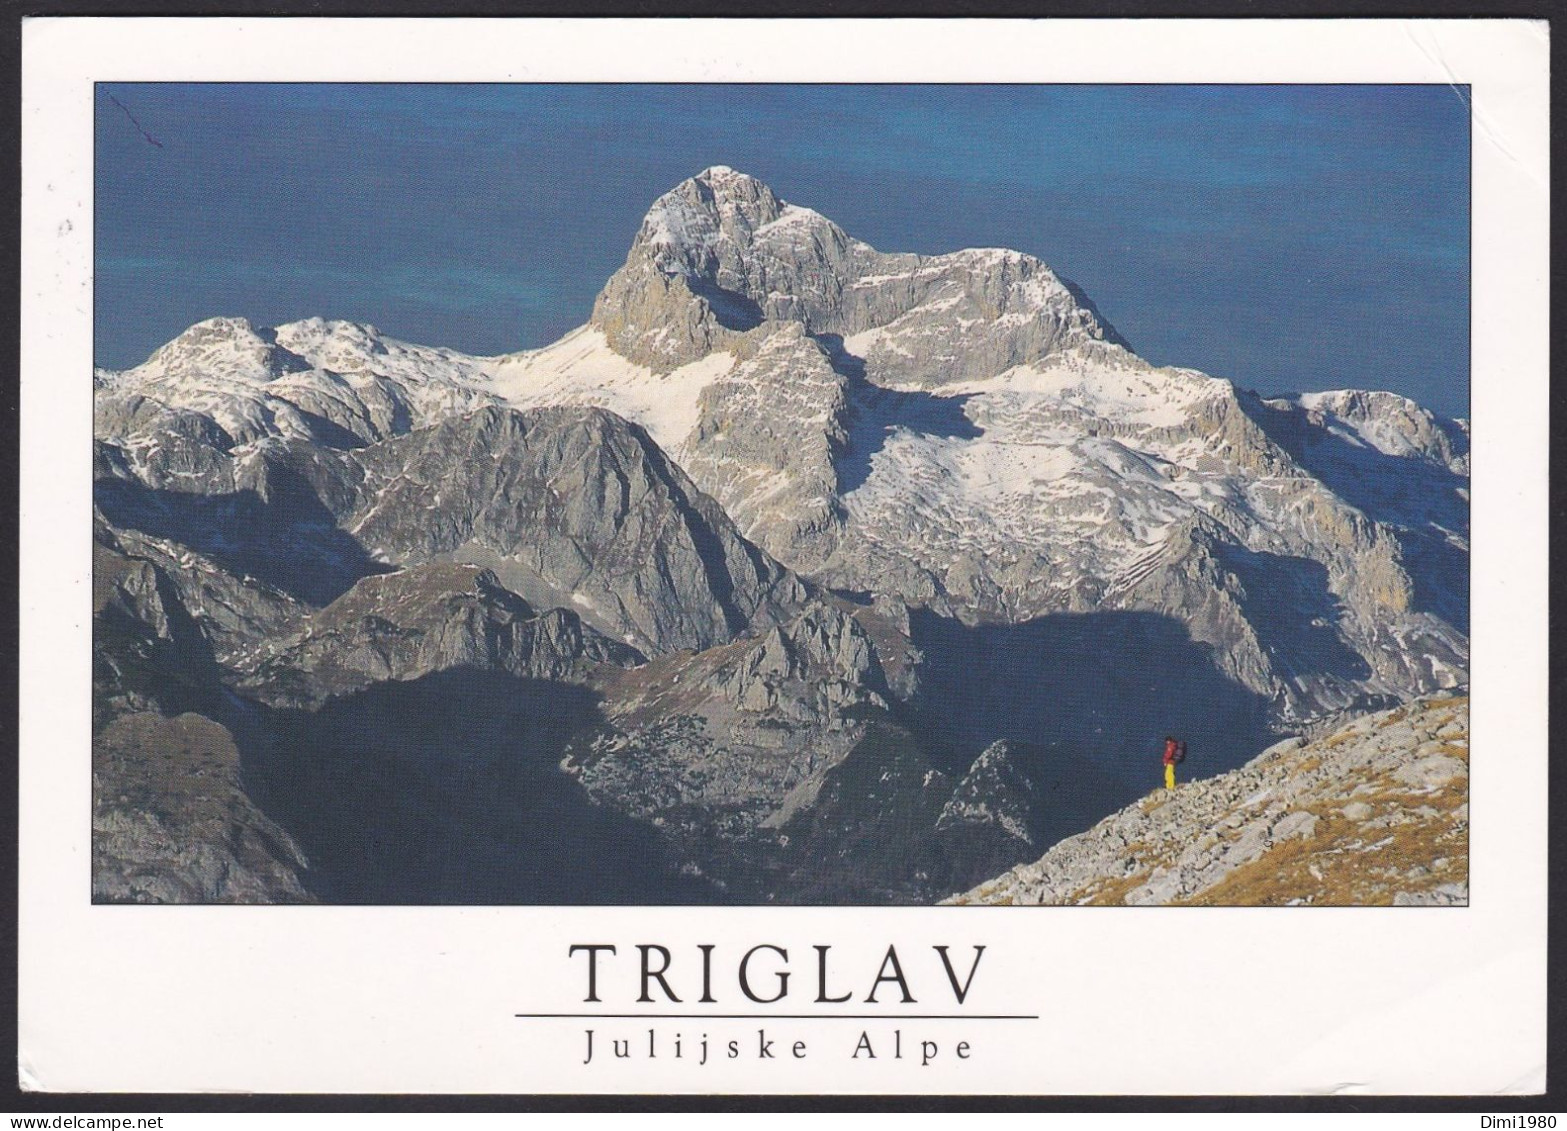 Triglav - Slowenien